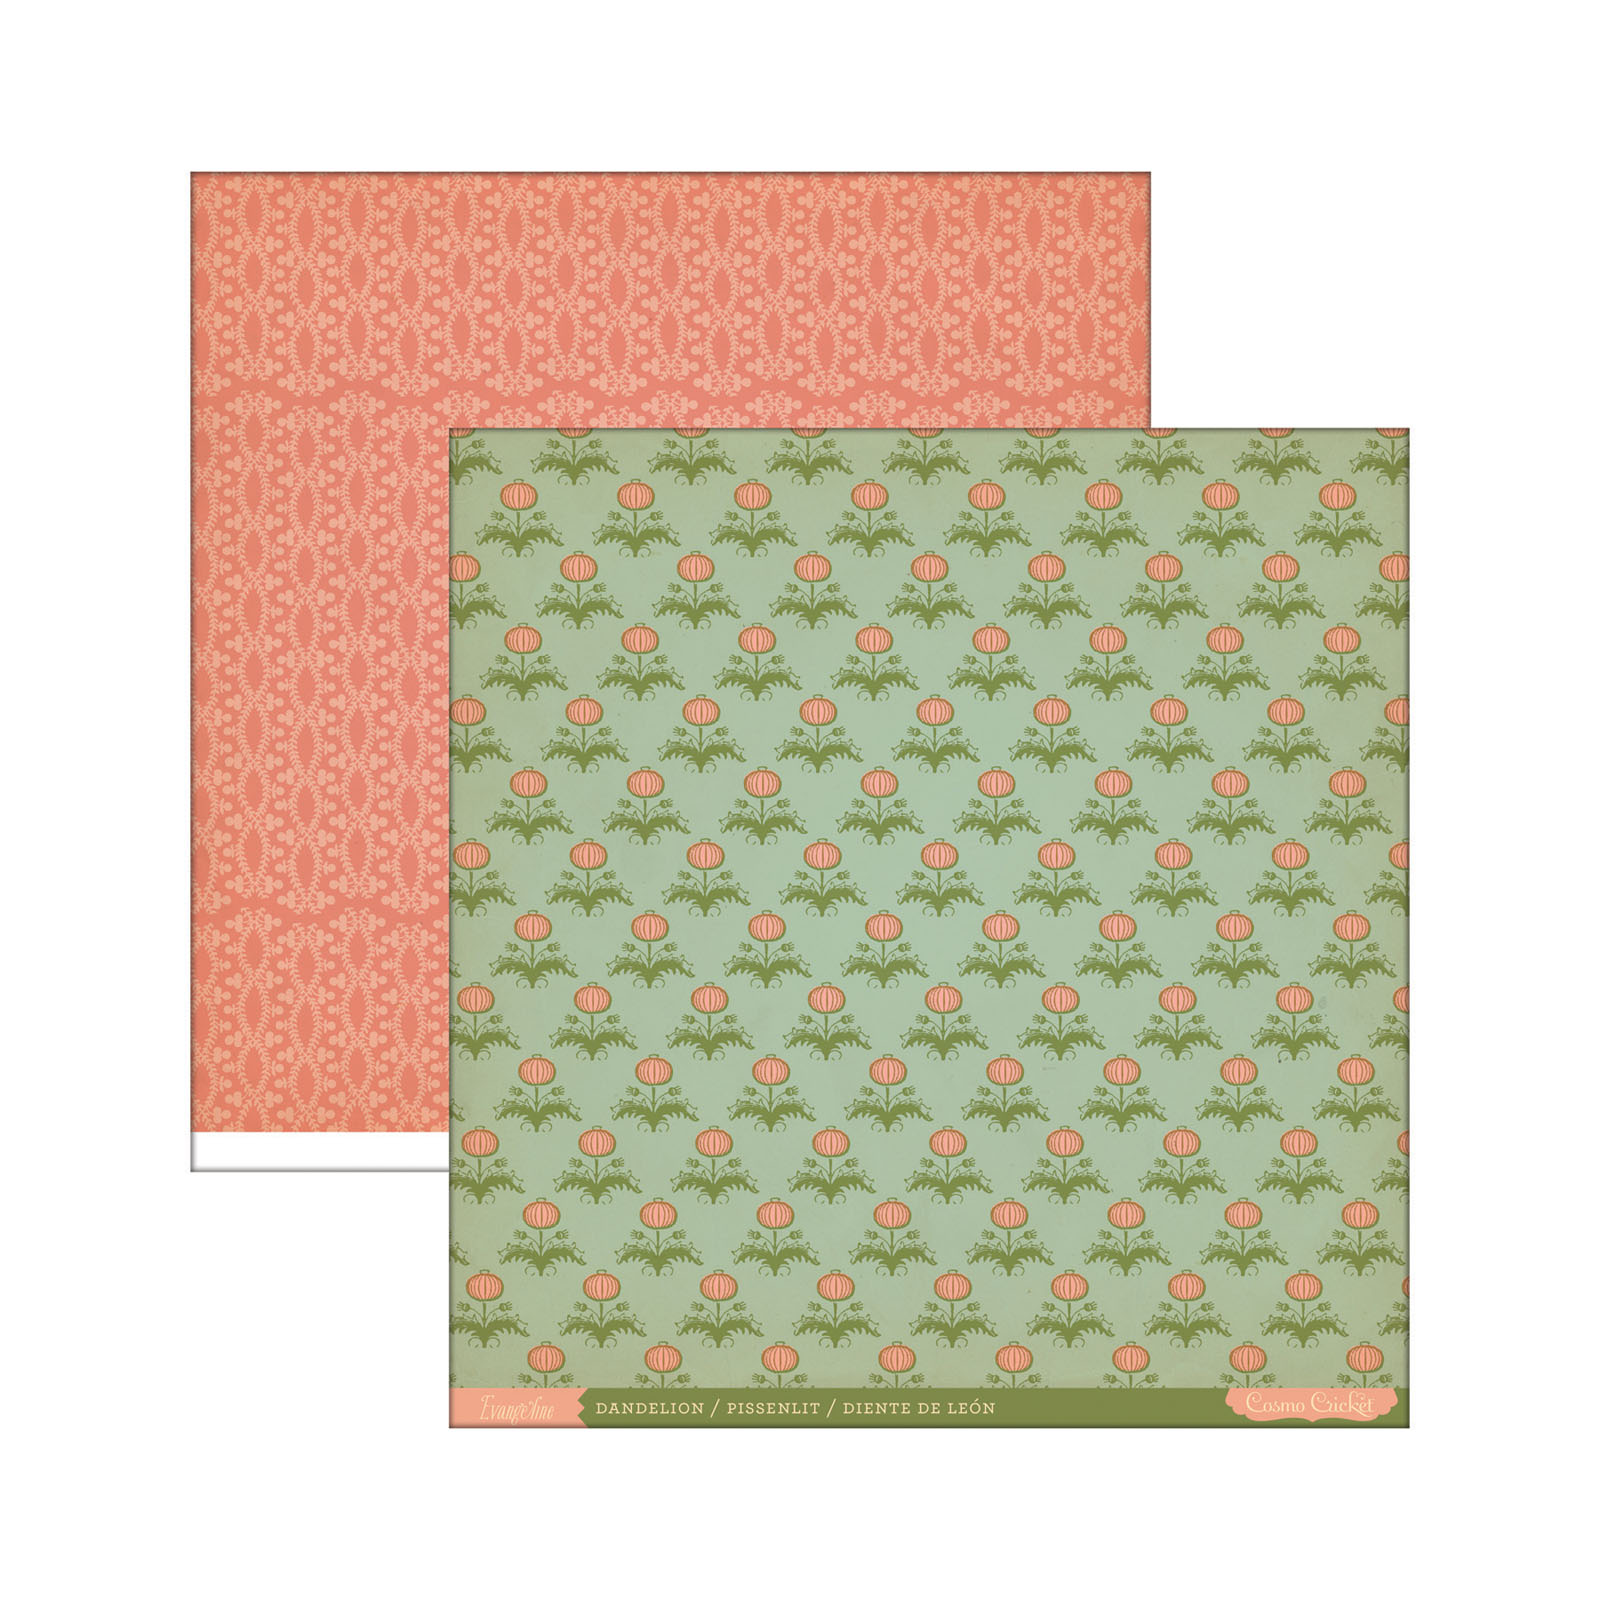 Cosmo cricket • Evangeline paper 12x12" x1 Dandelion